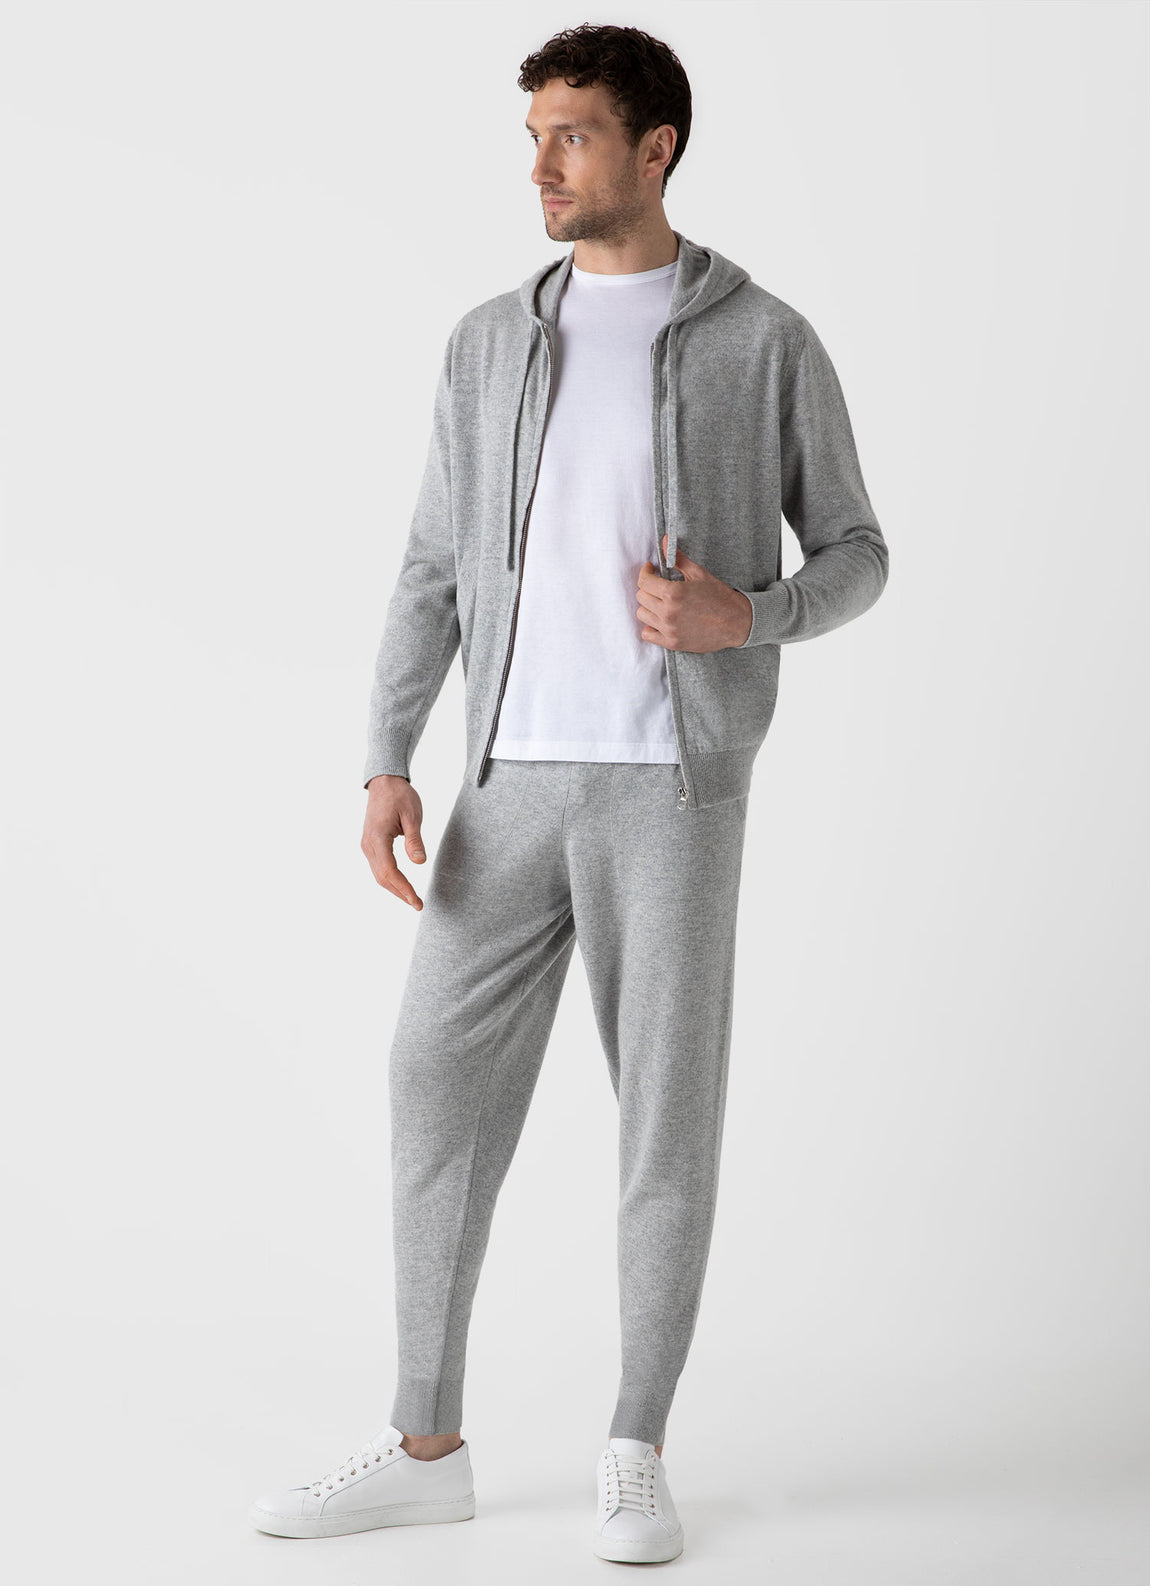 Men's Cashmere Zip Hoody in Grey Melange | Sunspel